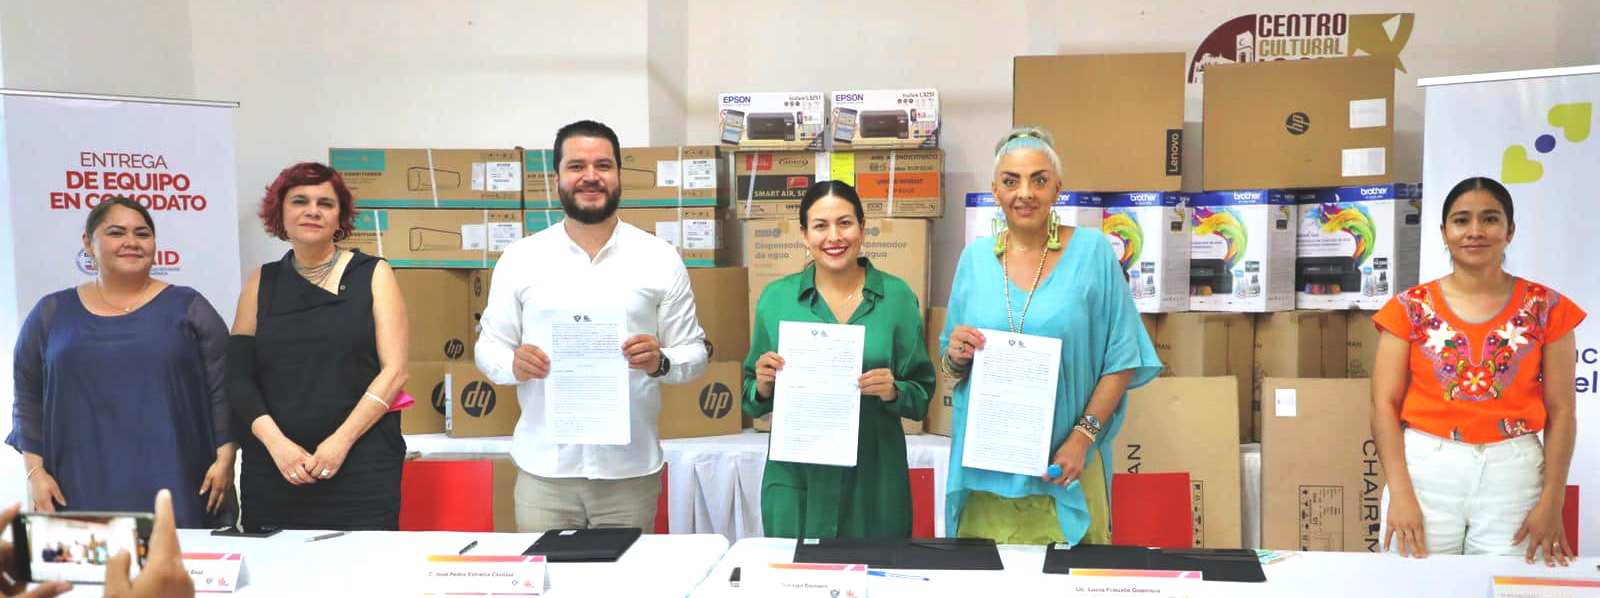 Recibe Ayuntamiento de La Paz equipo para Justicia Cívica